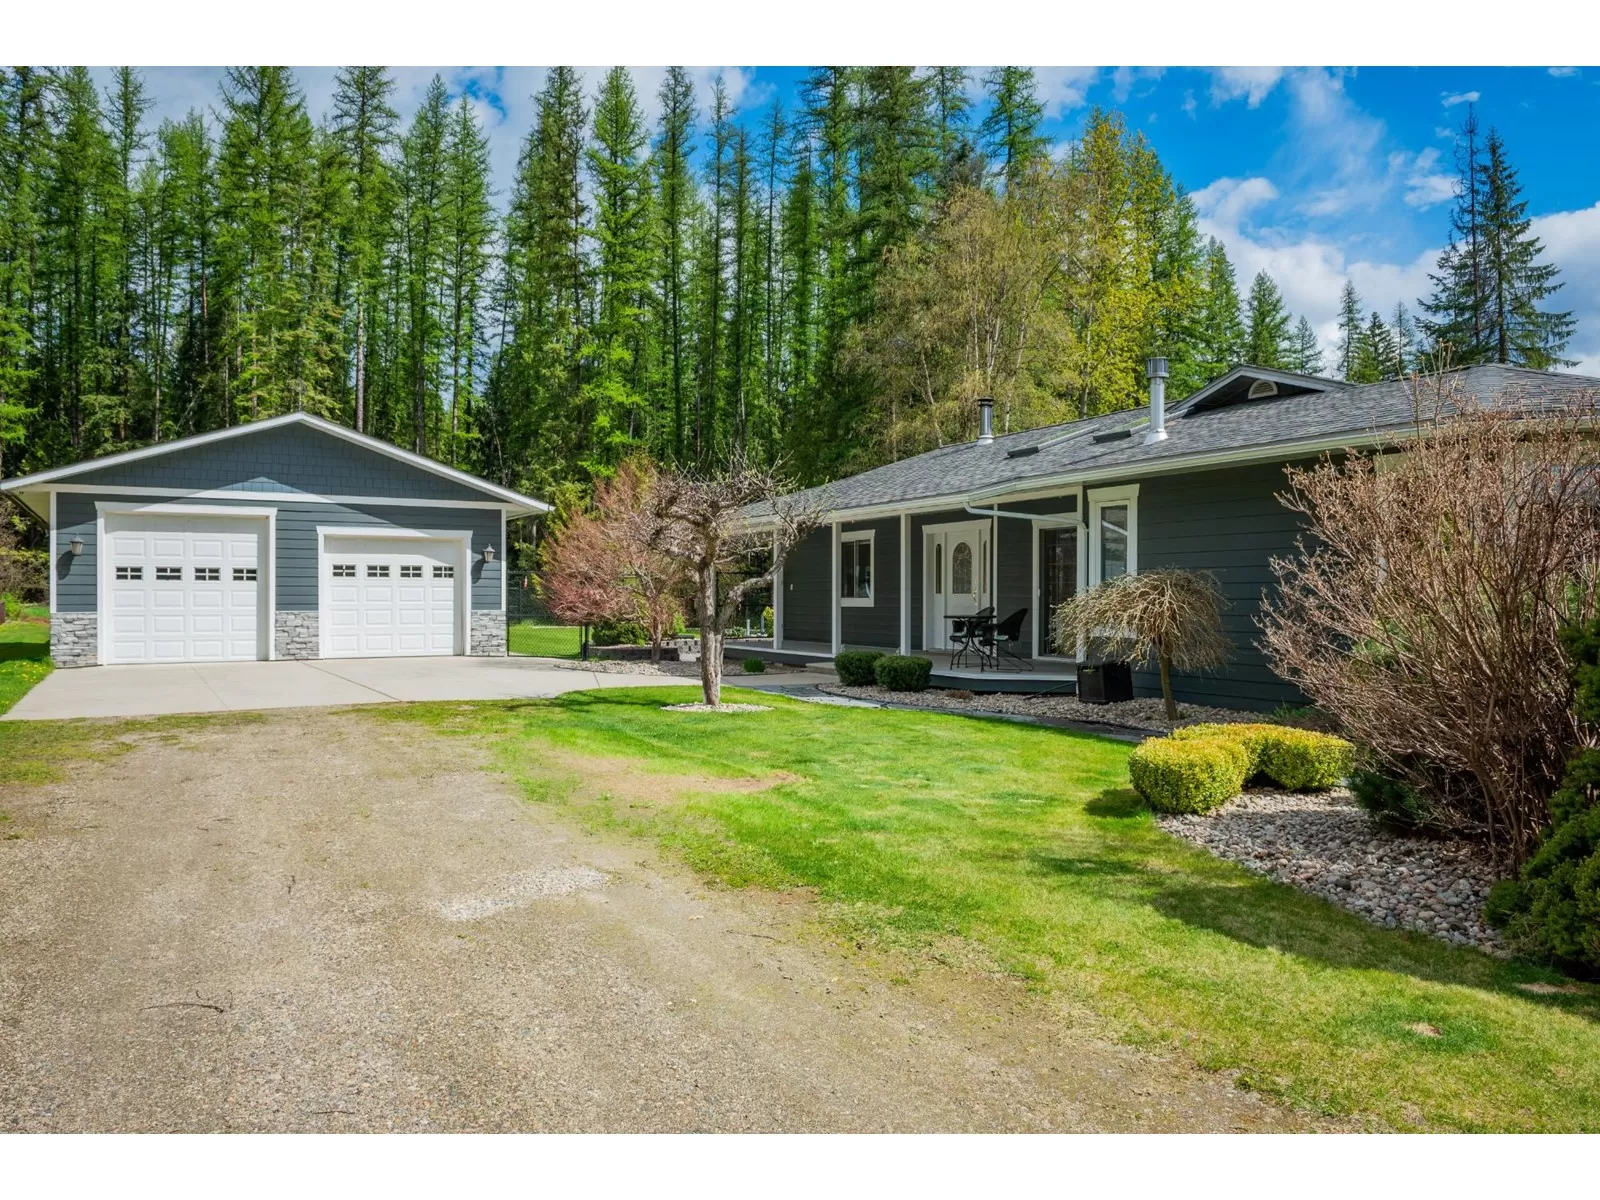 House for rent: 2535 Sorokin Rd, Krestova, British Columbia V0G 1H2